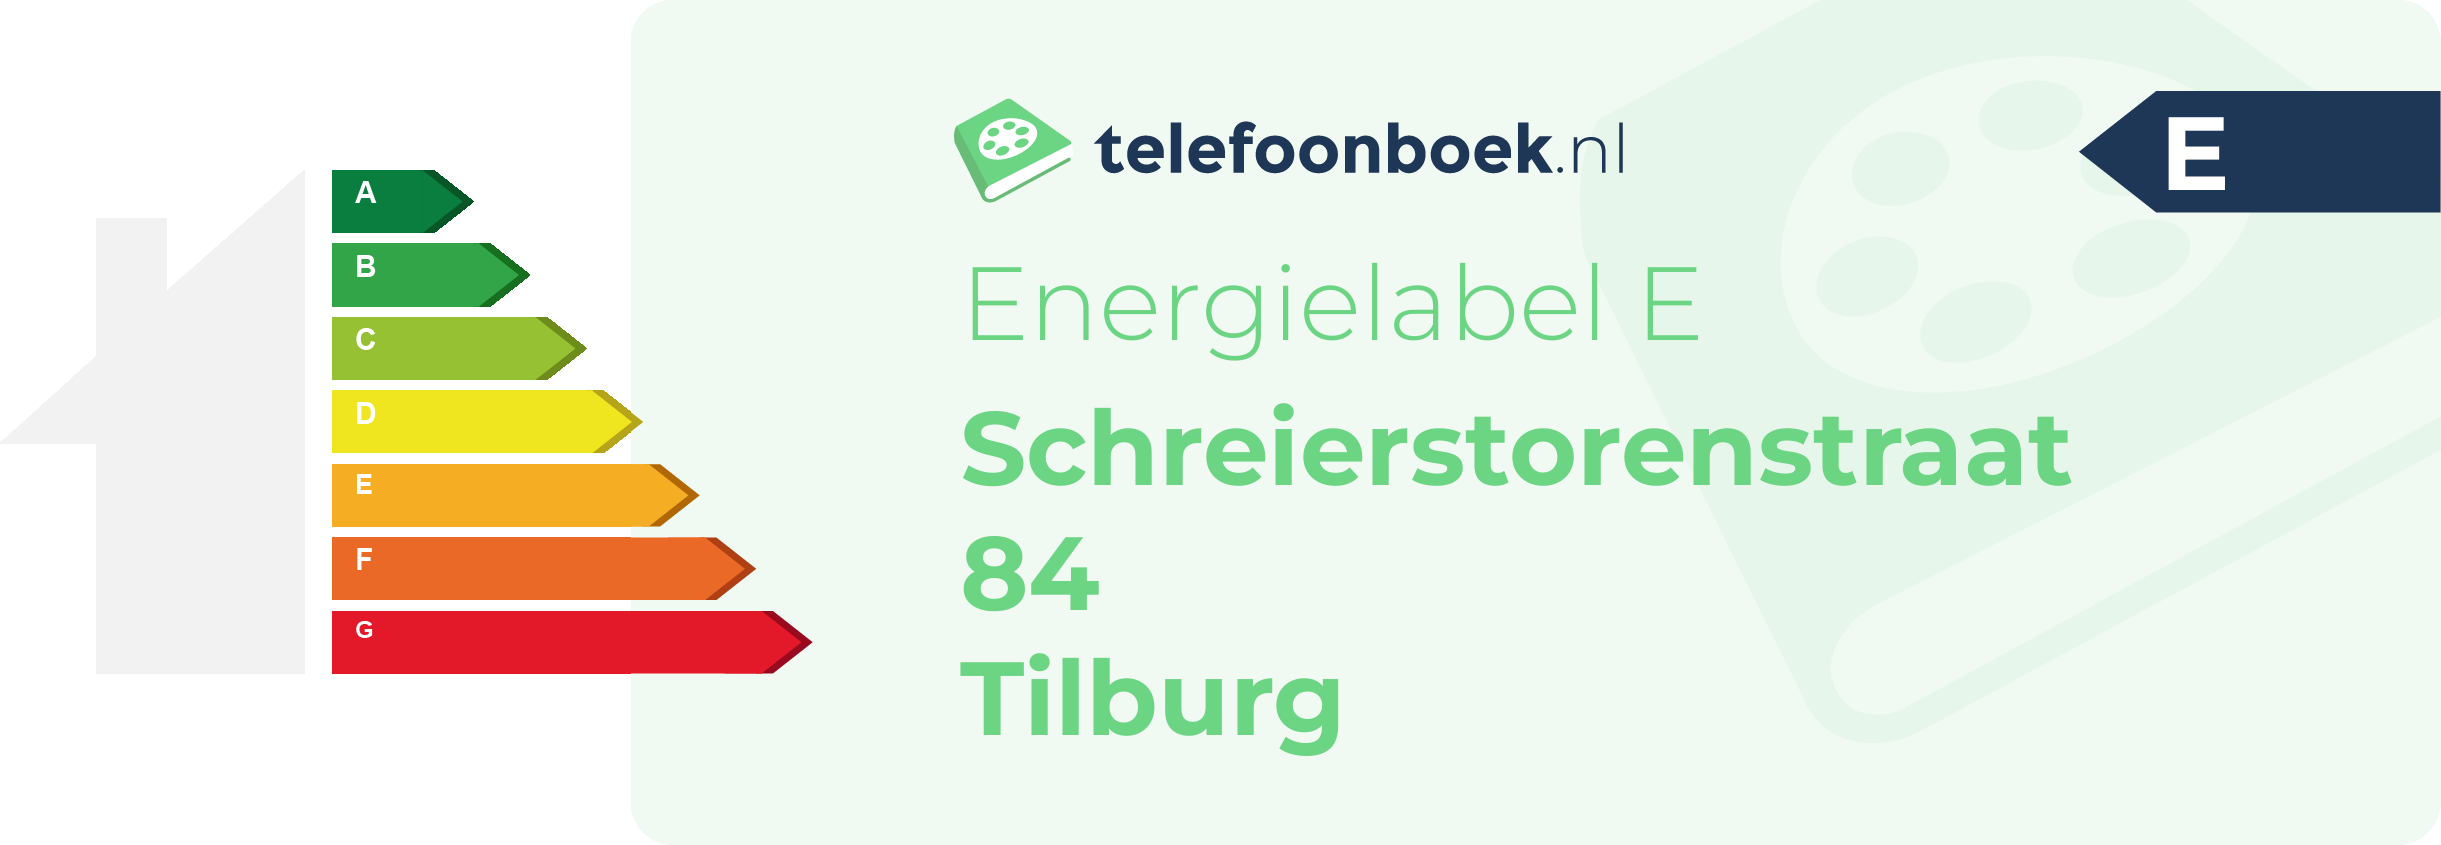 Energielabel Schreierstorenstraat 84 Tilburg